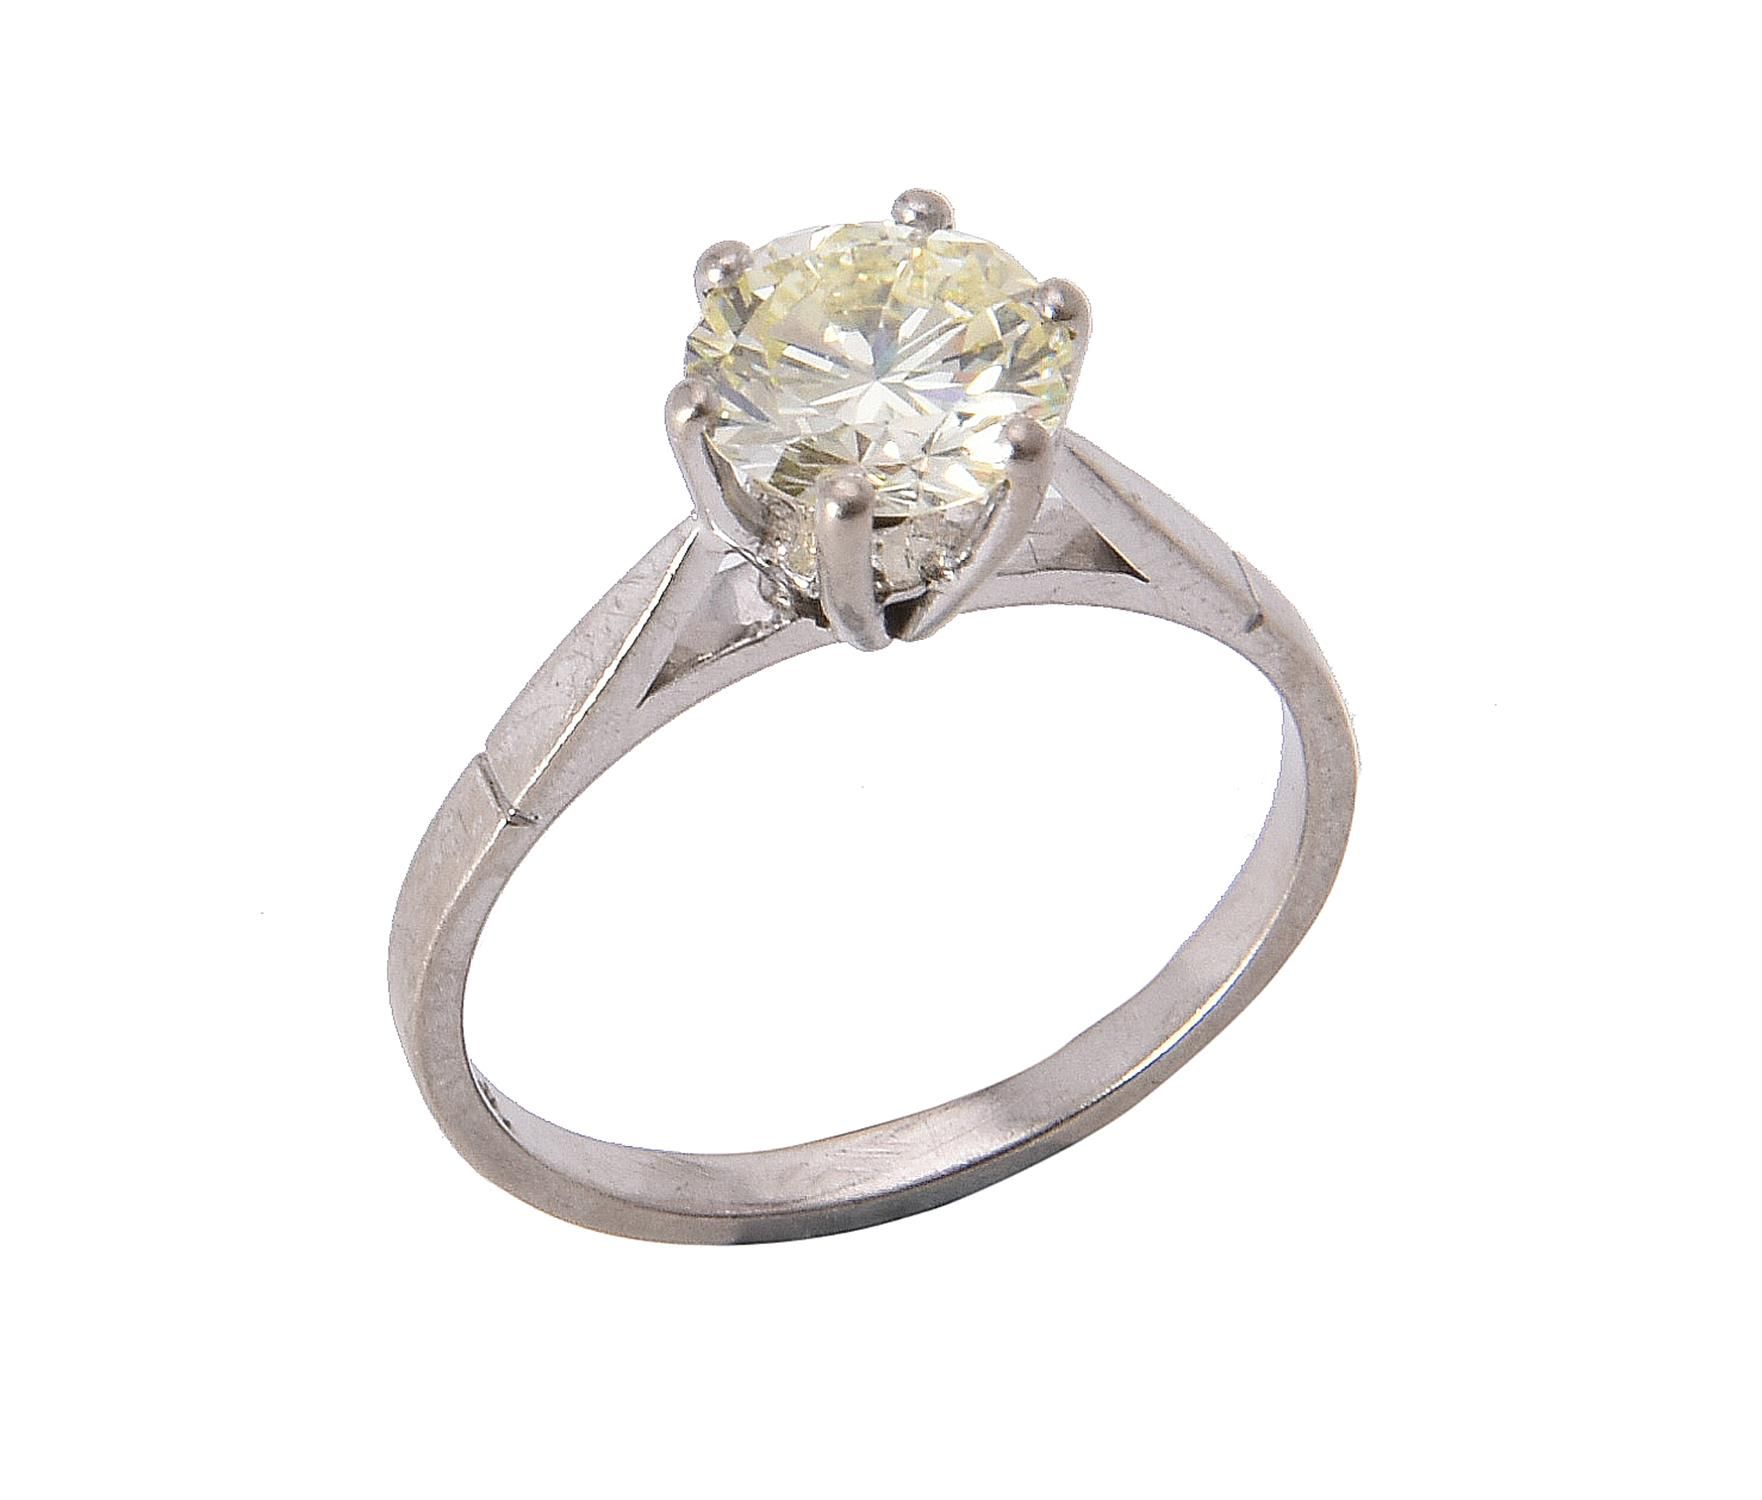 A single stone diamond ring 一枚单石钻石戒指，明亮式切割钻石估计重1.56克拉，六爪镶嵌，手指尺寸为P 1/2，总重3.4克